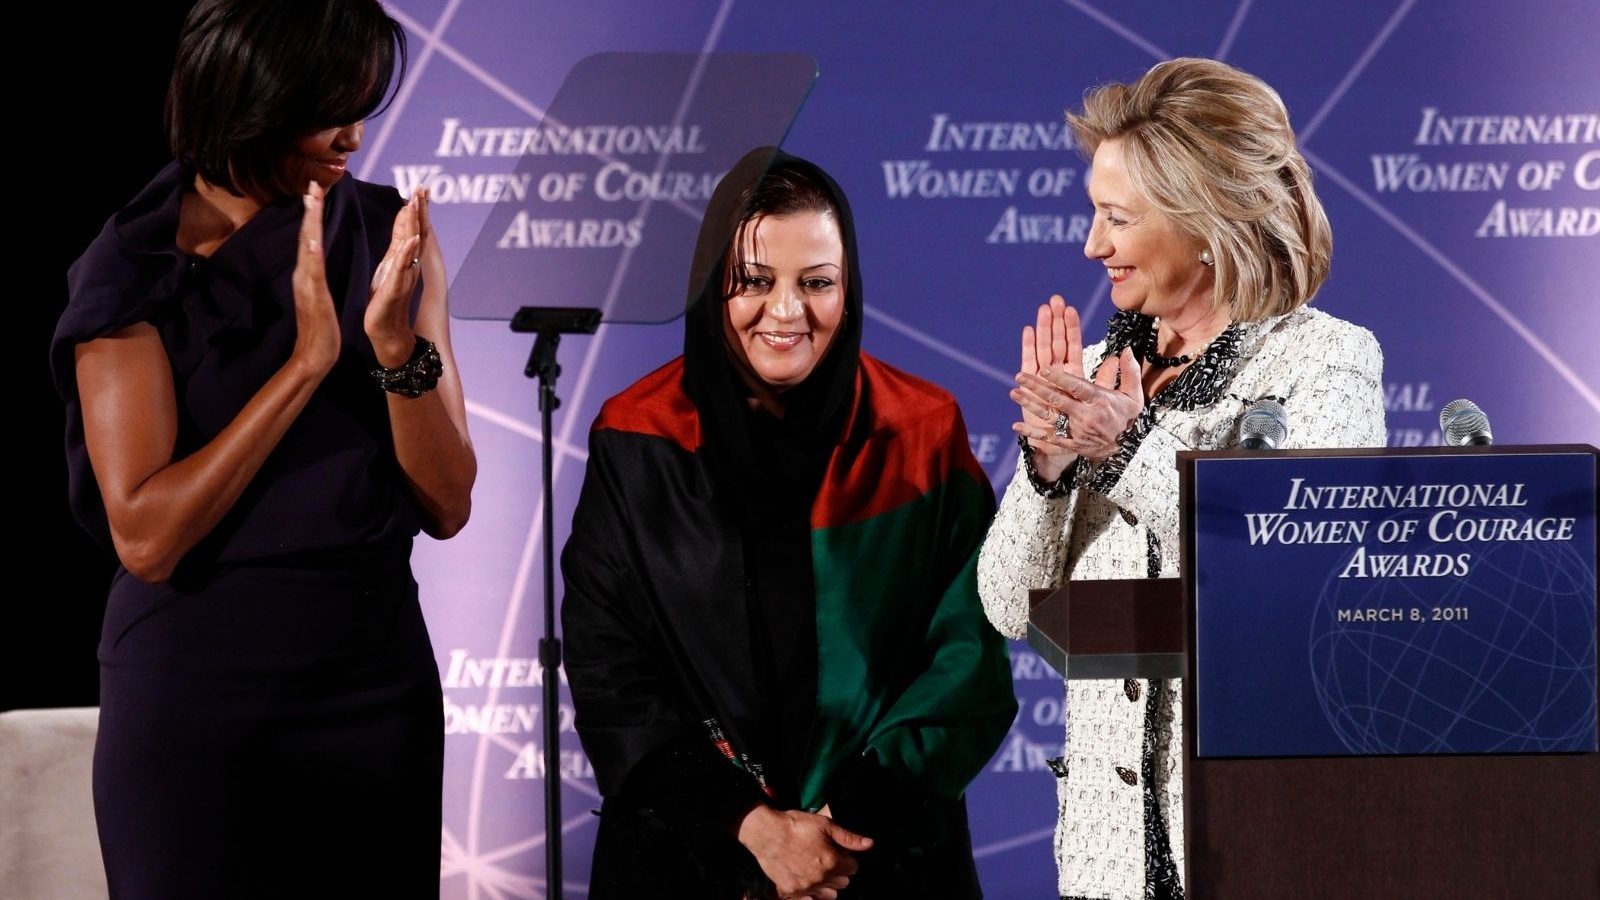 Italia Memberikan Kewarganegaraan kepada Penuntut Wanita Afghanistan Tertinggi yang Melarikan Diri dari Pengambilalihan Taliban